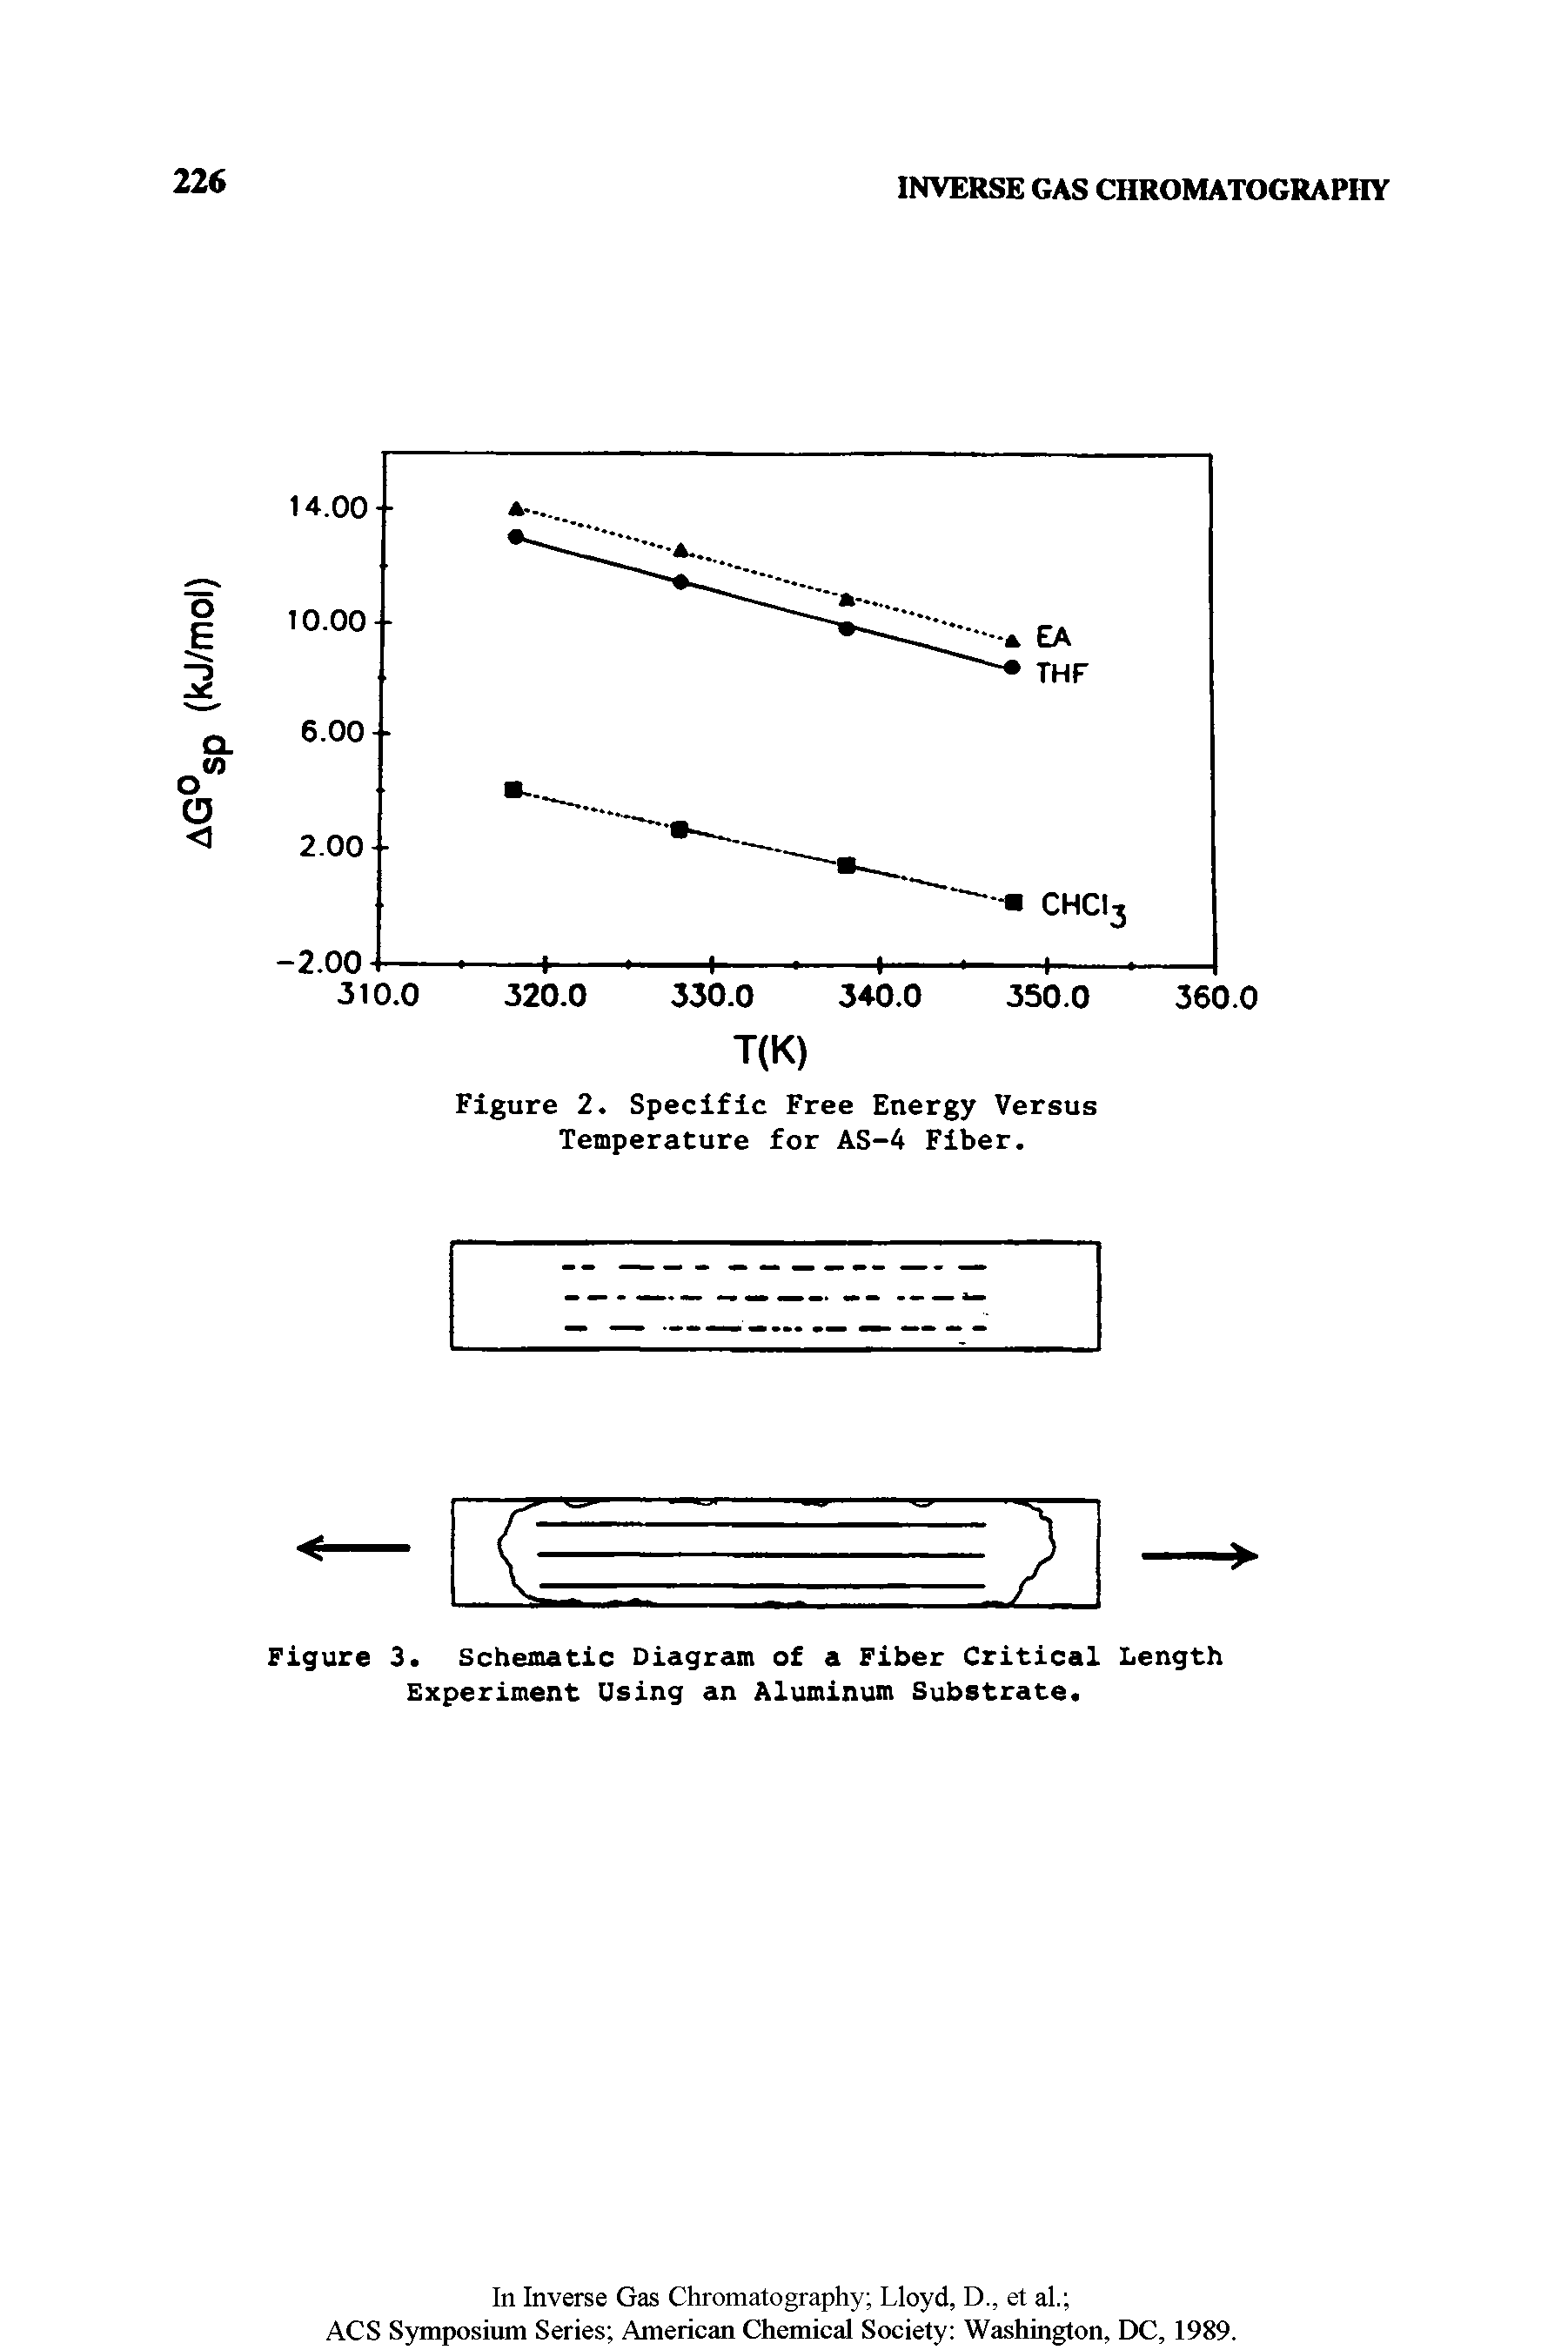 Figure 2. Specific Free Energy Versus Temperature for AS-4 Fiber.